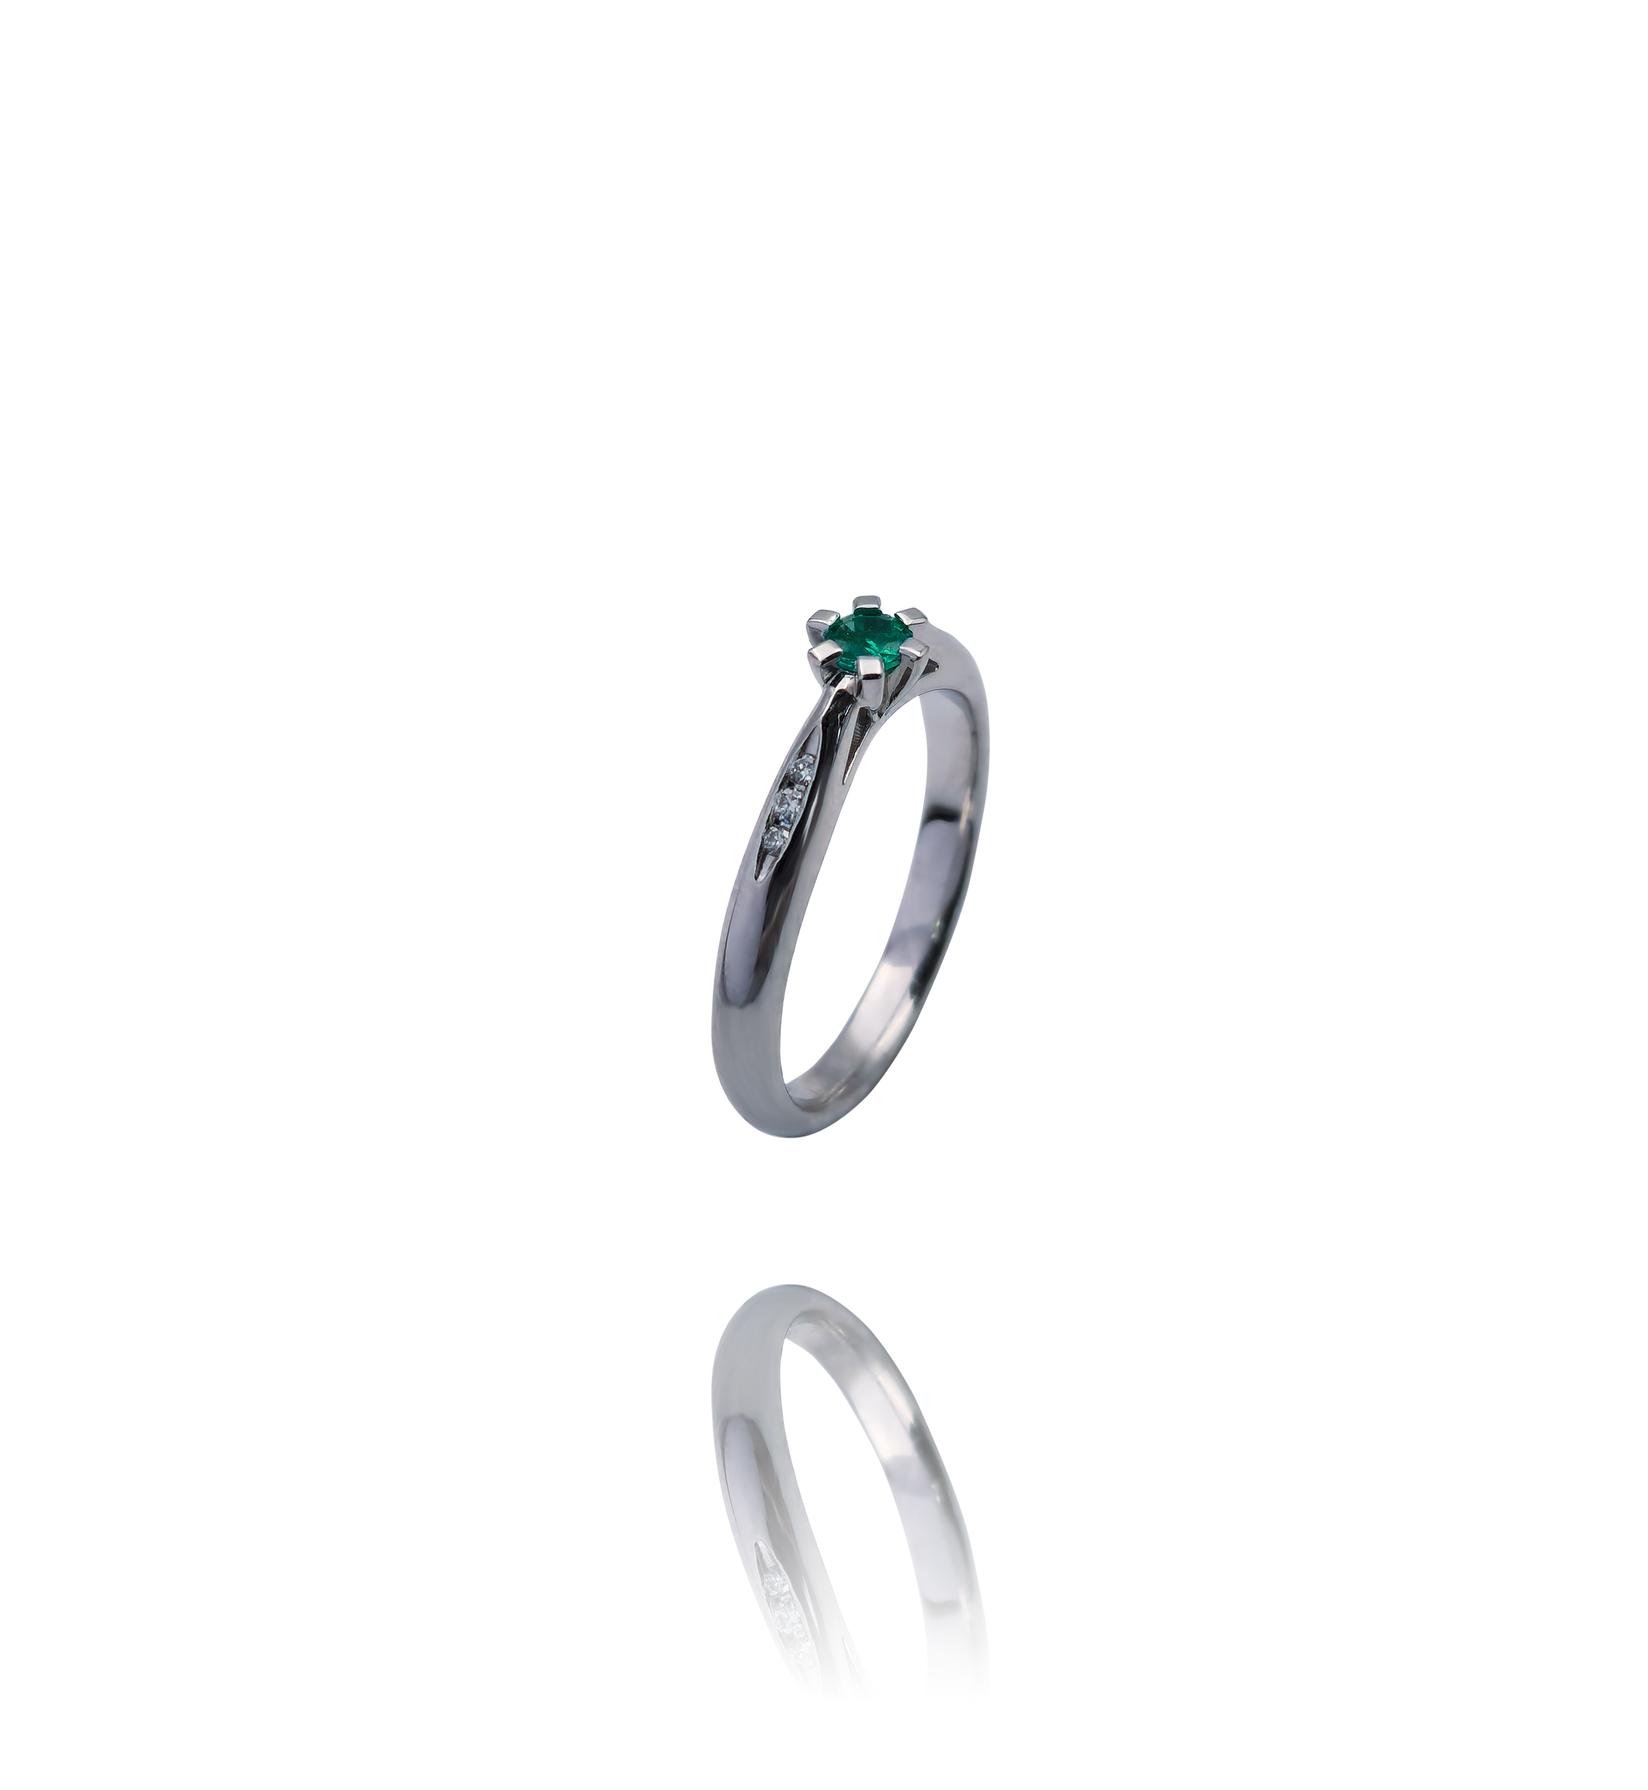 Selected image for Ženski prsten od Belog zlata sa Brilijantima i Smaragdom, 585, 18mm